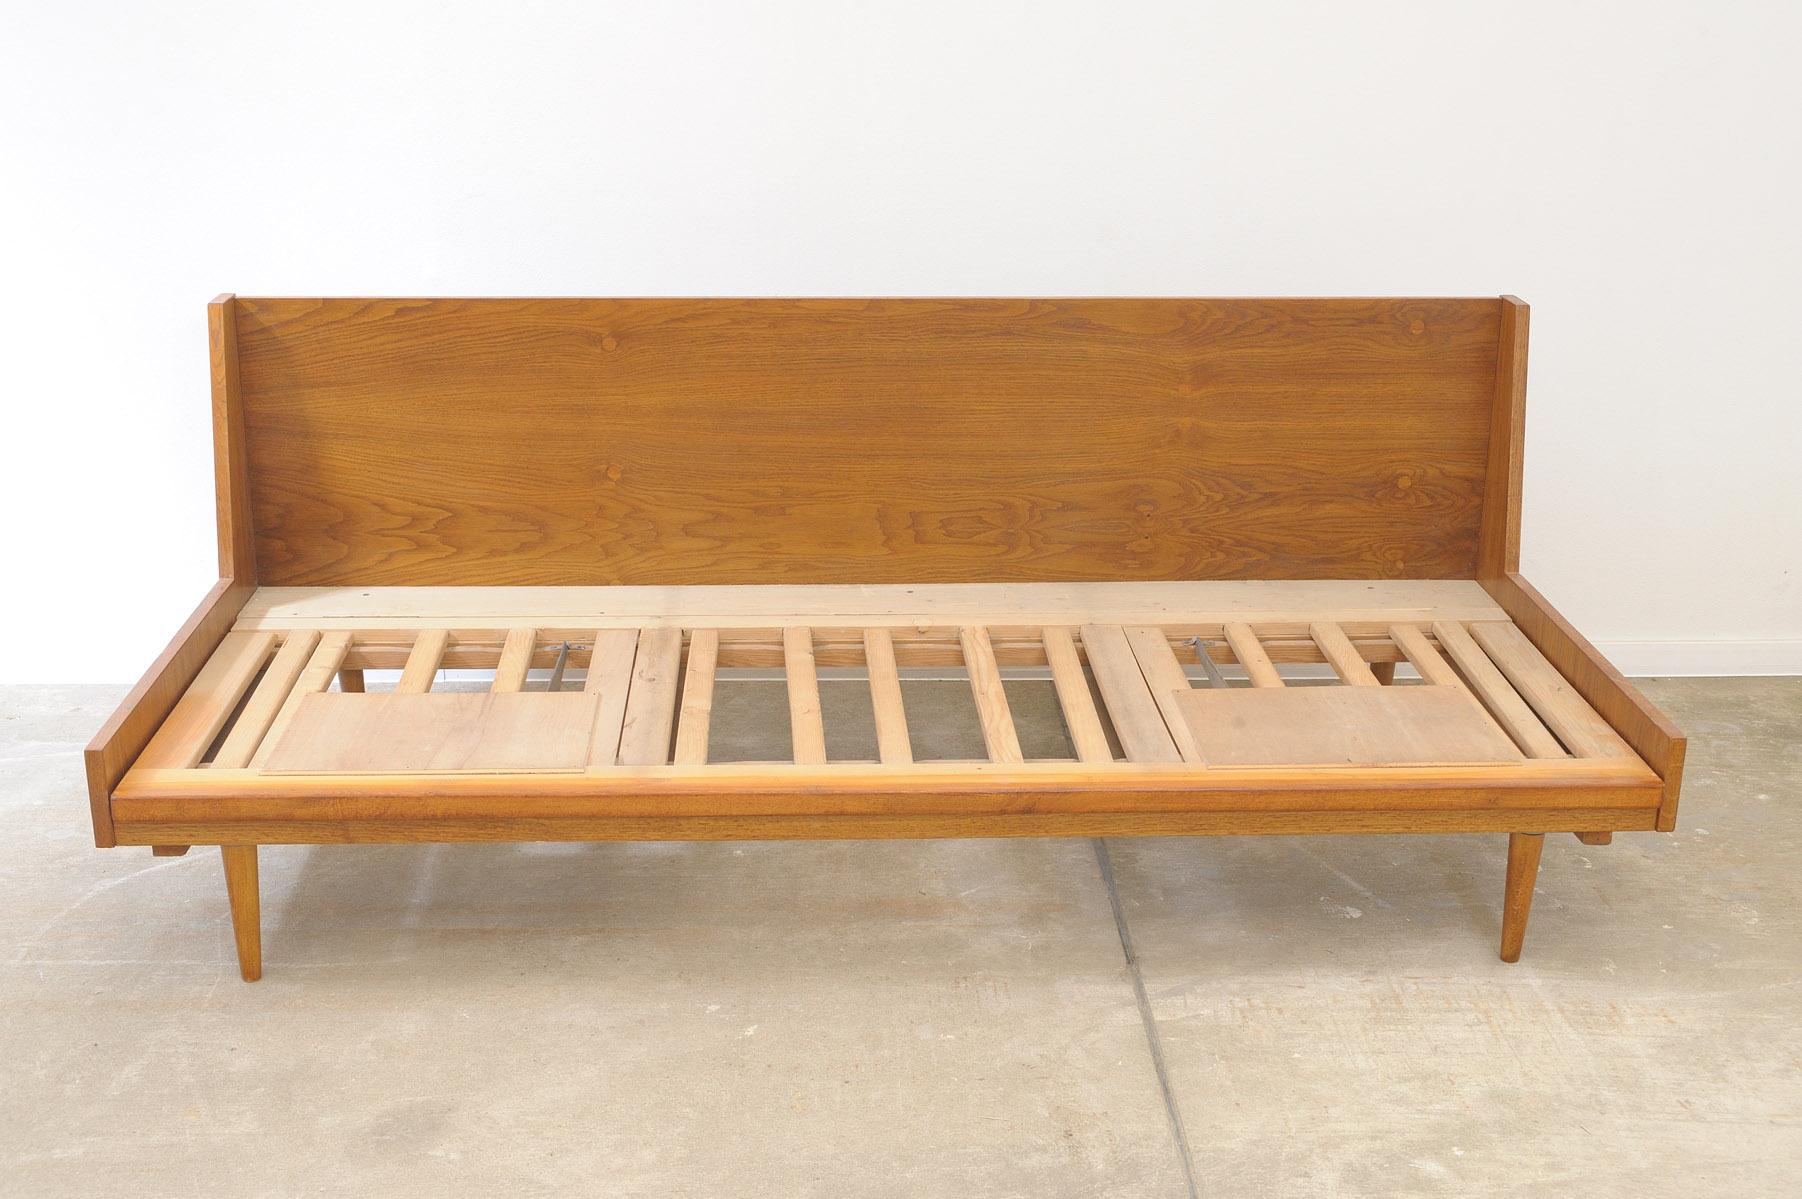 Canapé-lit du milieu du siècle, fabriqué dans l'ancienne Tchécoslovaquie dans les années 1970. Le canapé a une structure en bois de hêtre et une tapisserie d'origine.

Les parties en bois ont été entièrement rénovées, les matelas portent des signes